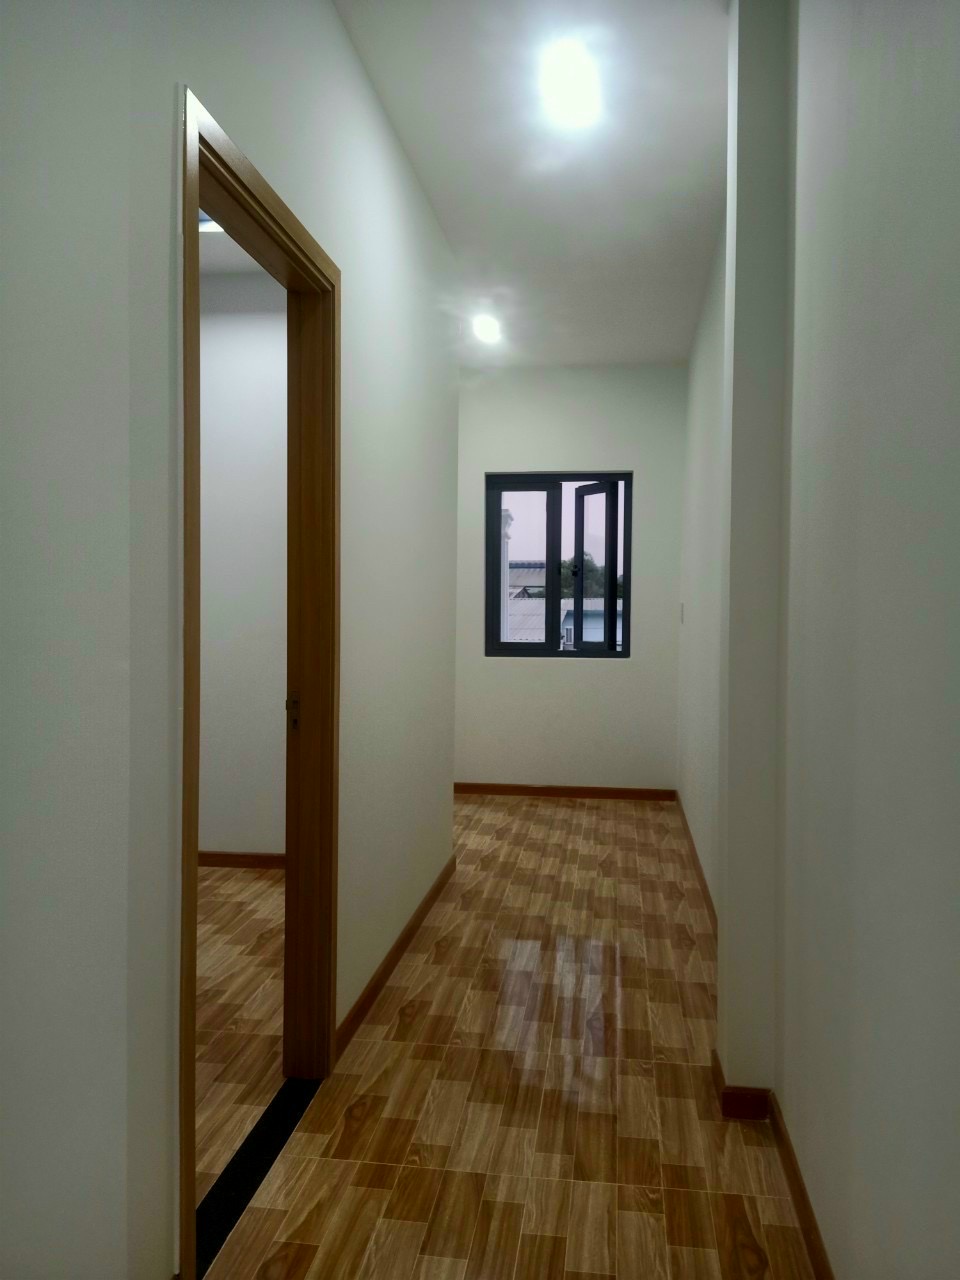 Bán nhà Phú Hoà, Kết cấu 1 trệt 1 lầu, 3 phòng ngủ, thuộc phường Phú Hòa